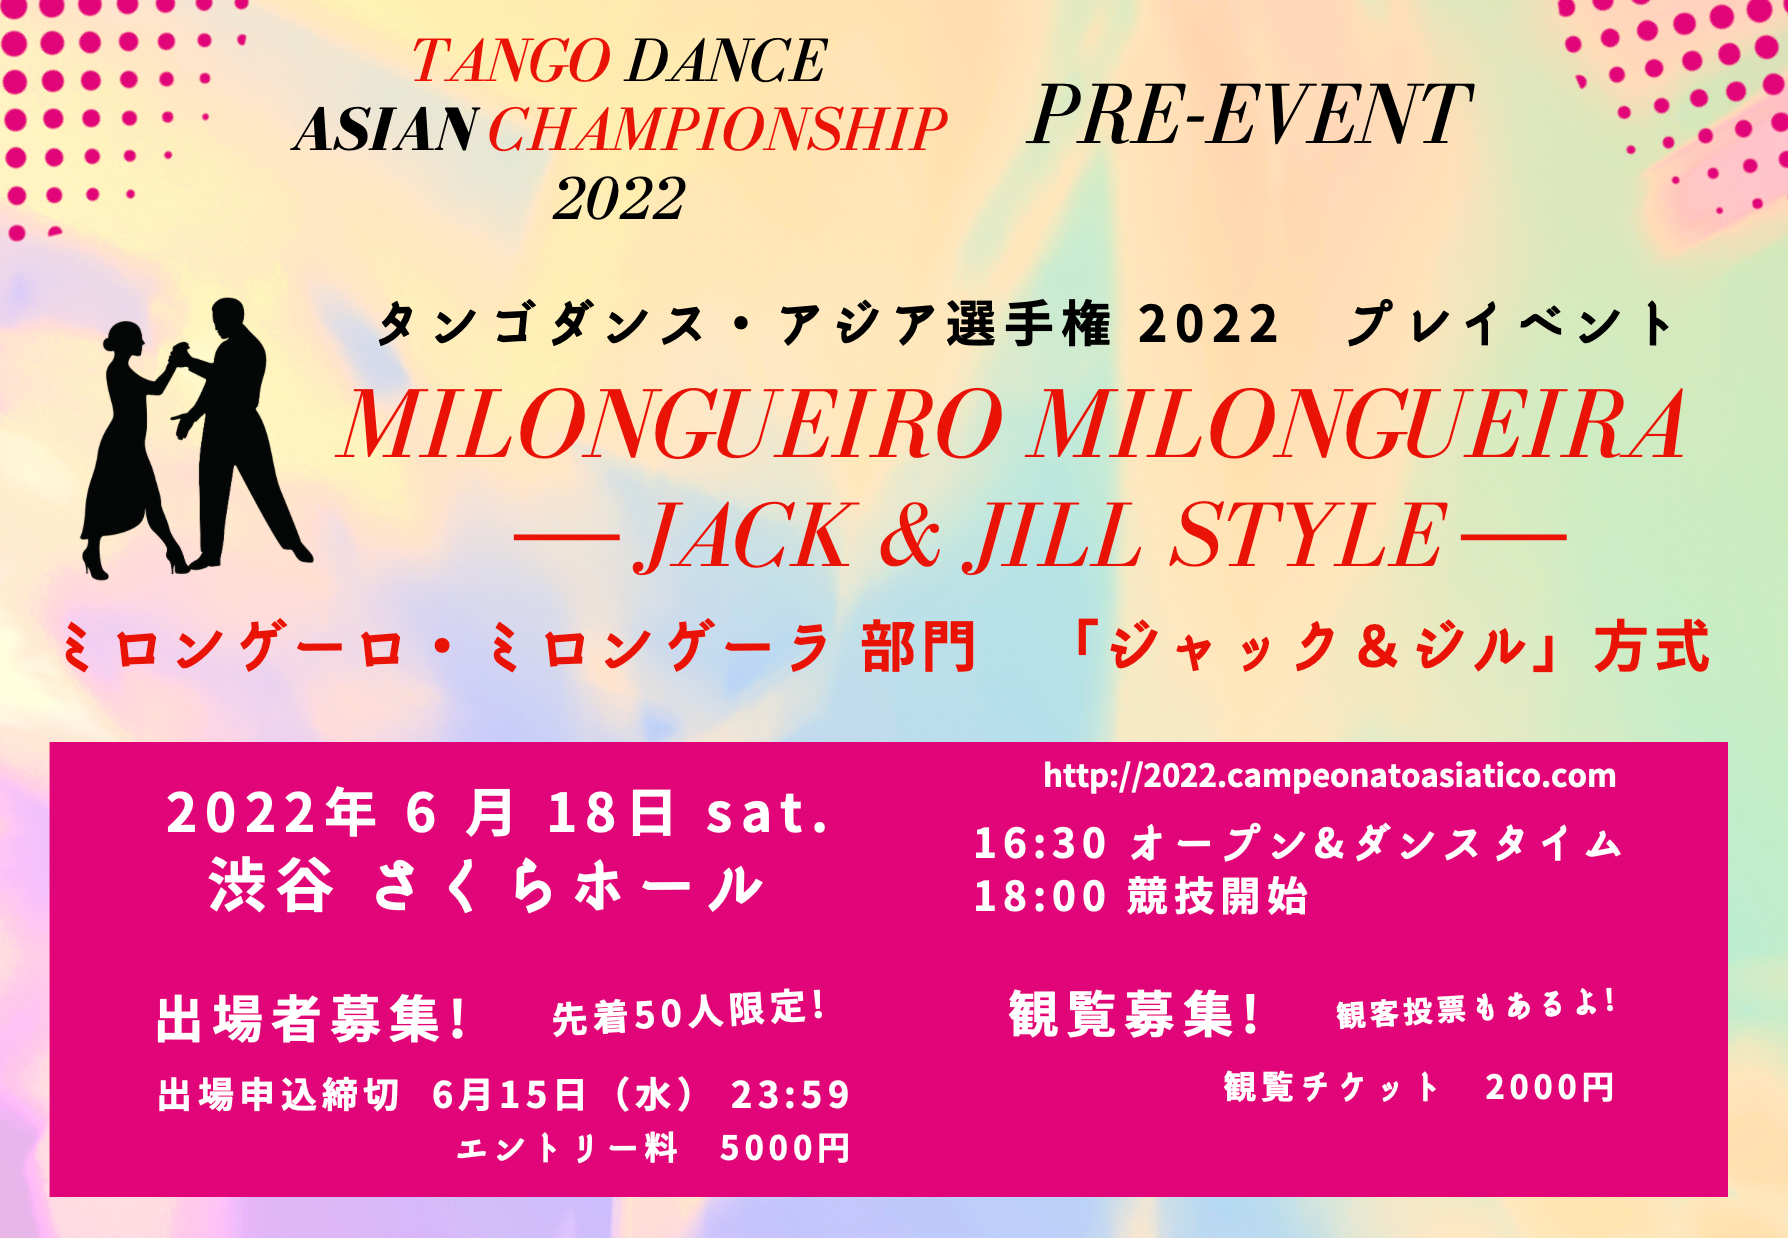 タンゴダンス・アジア選手権 プレイベント「Milonguero Milonguera」開催します！